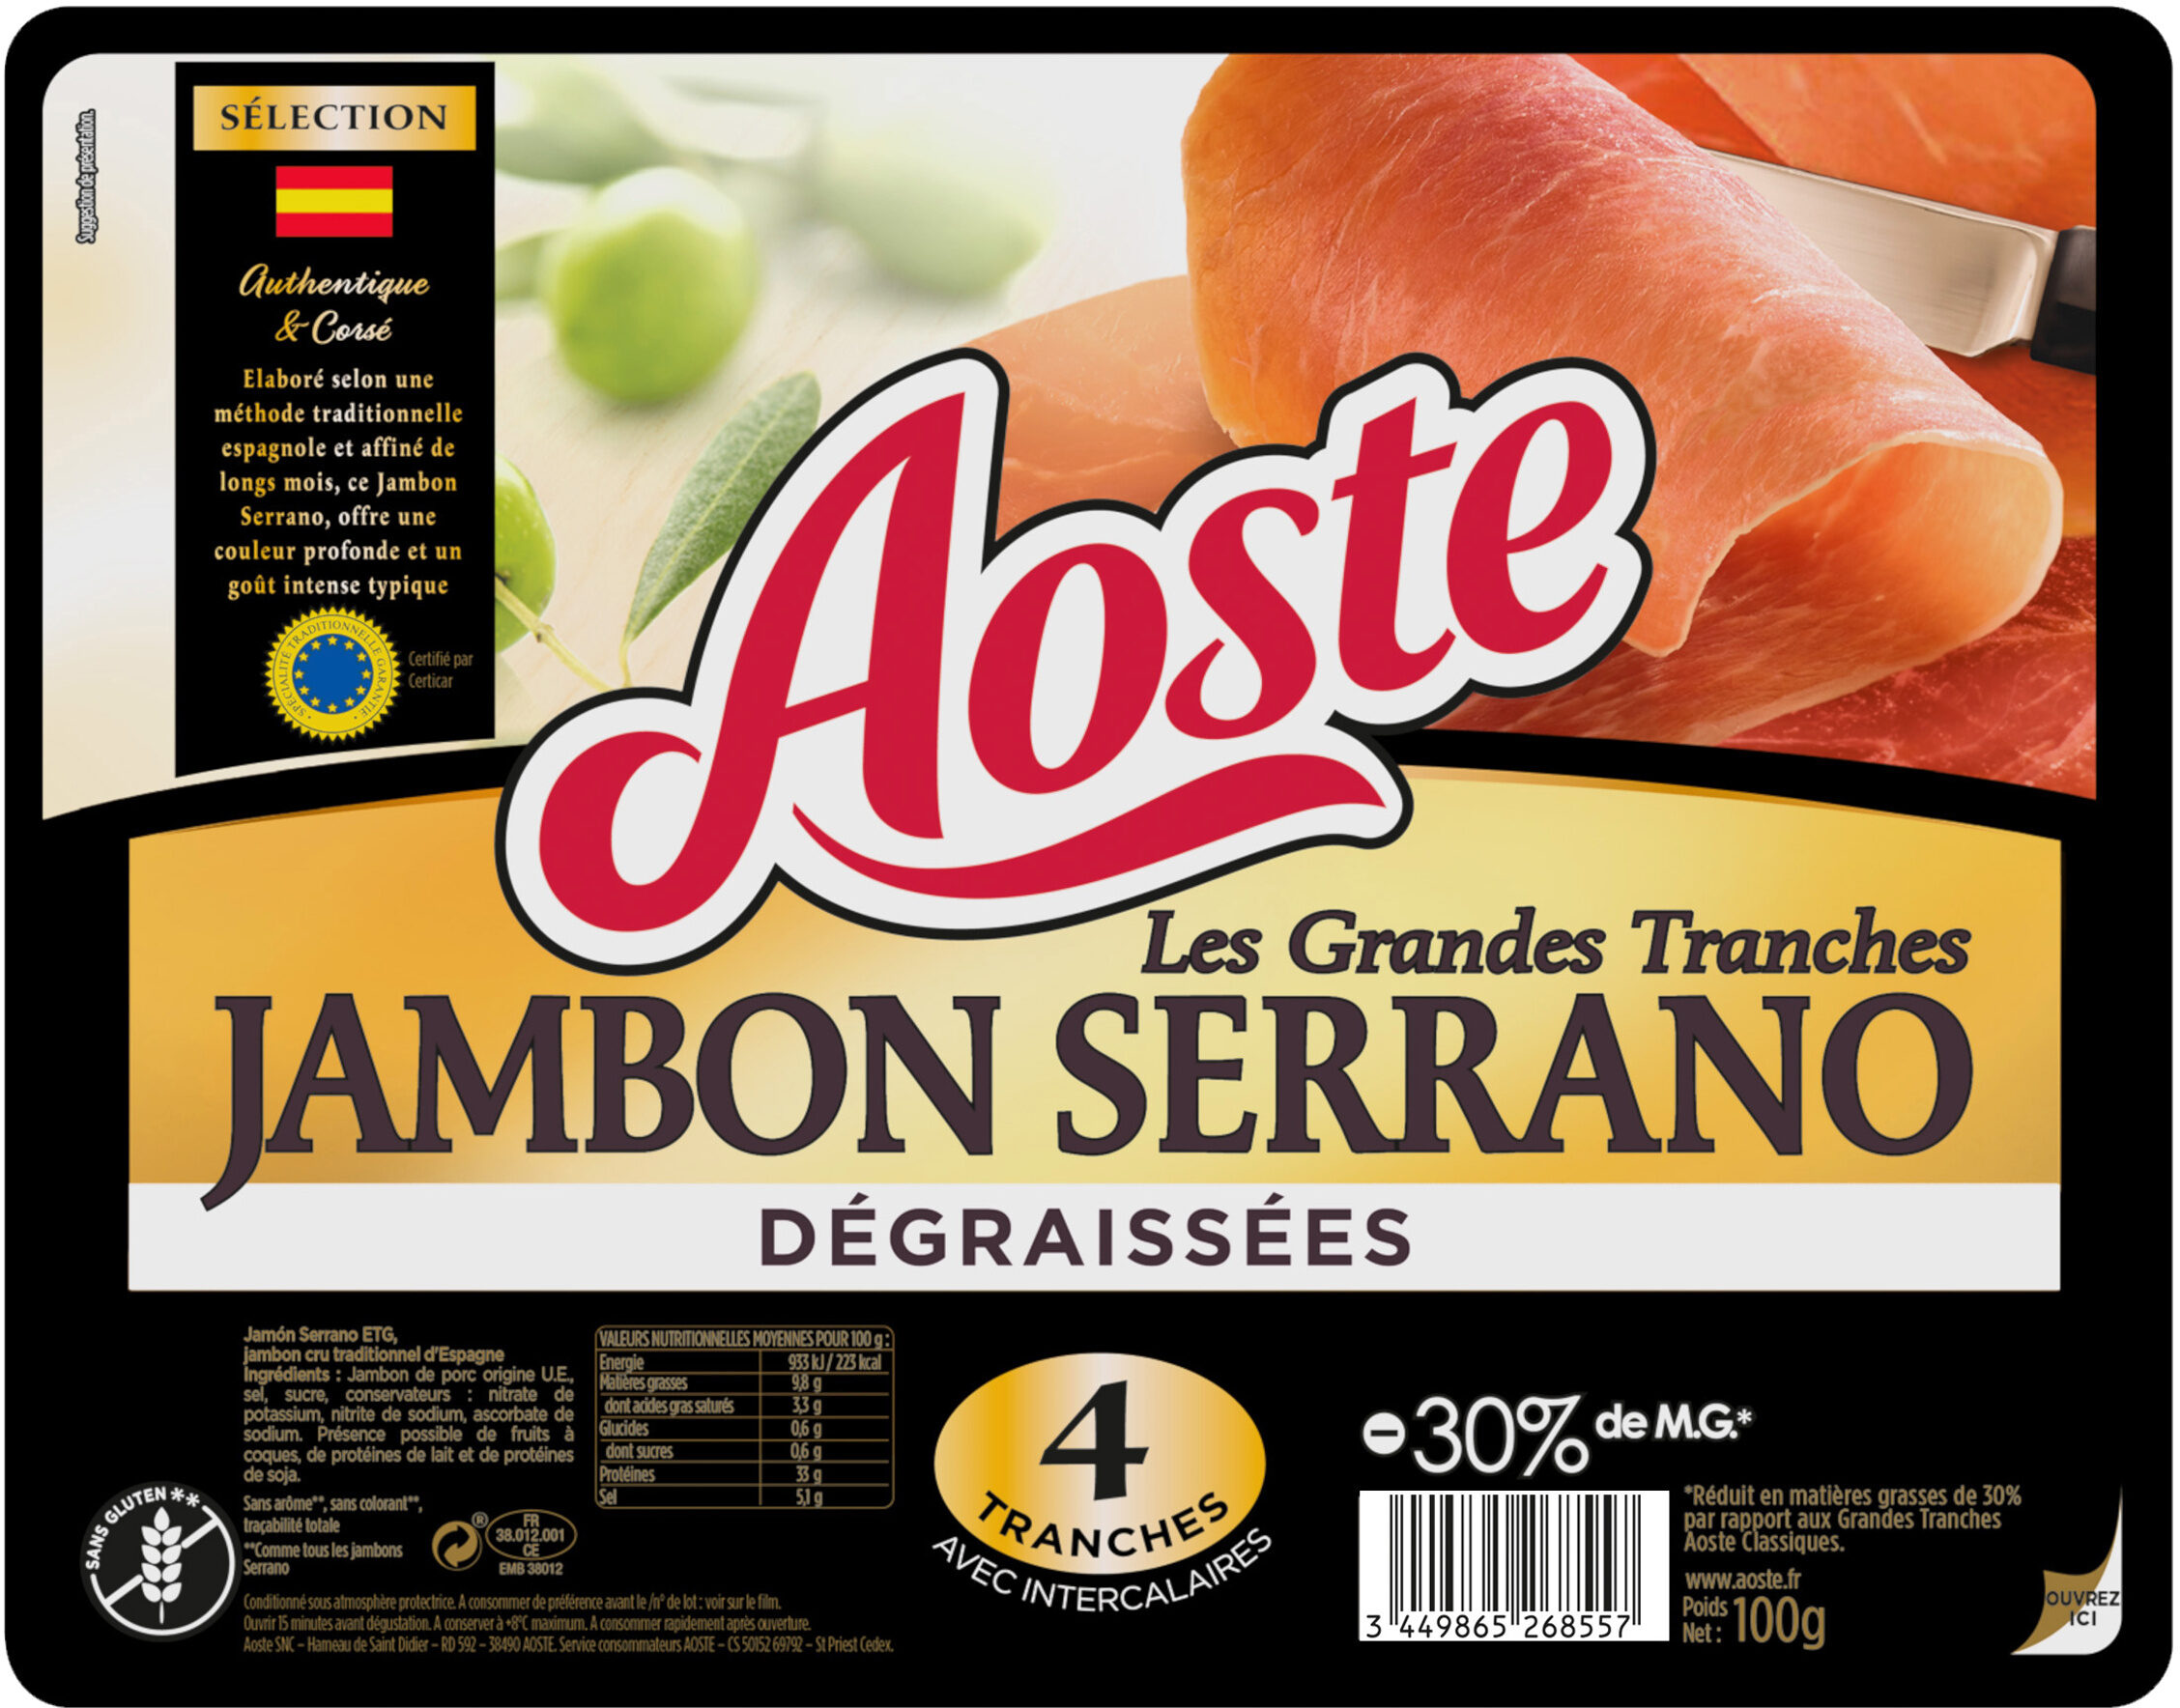 Les Grandes Tranches Jambon Serrano dégraissées - Aoste - Product - fr